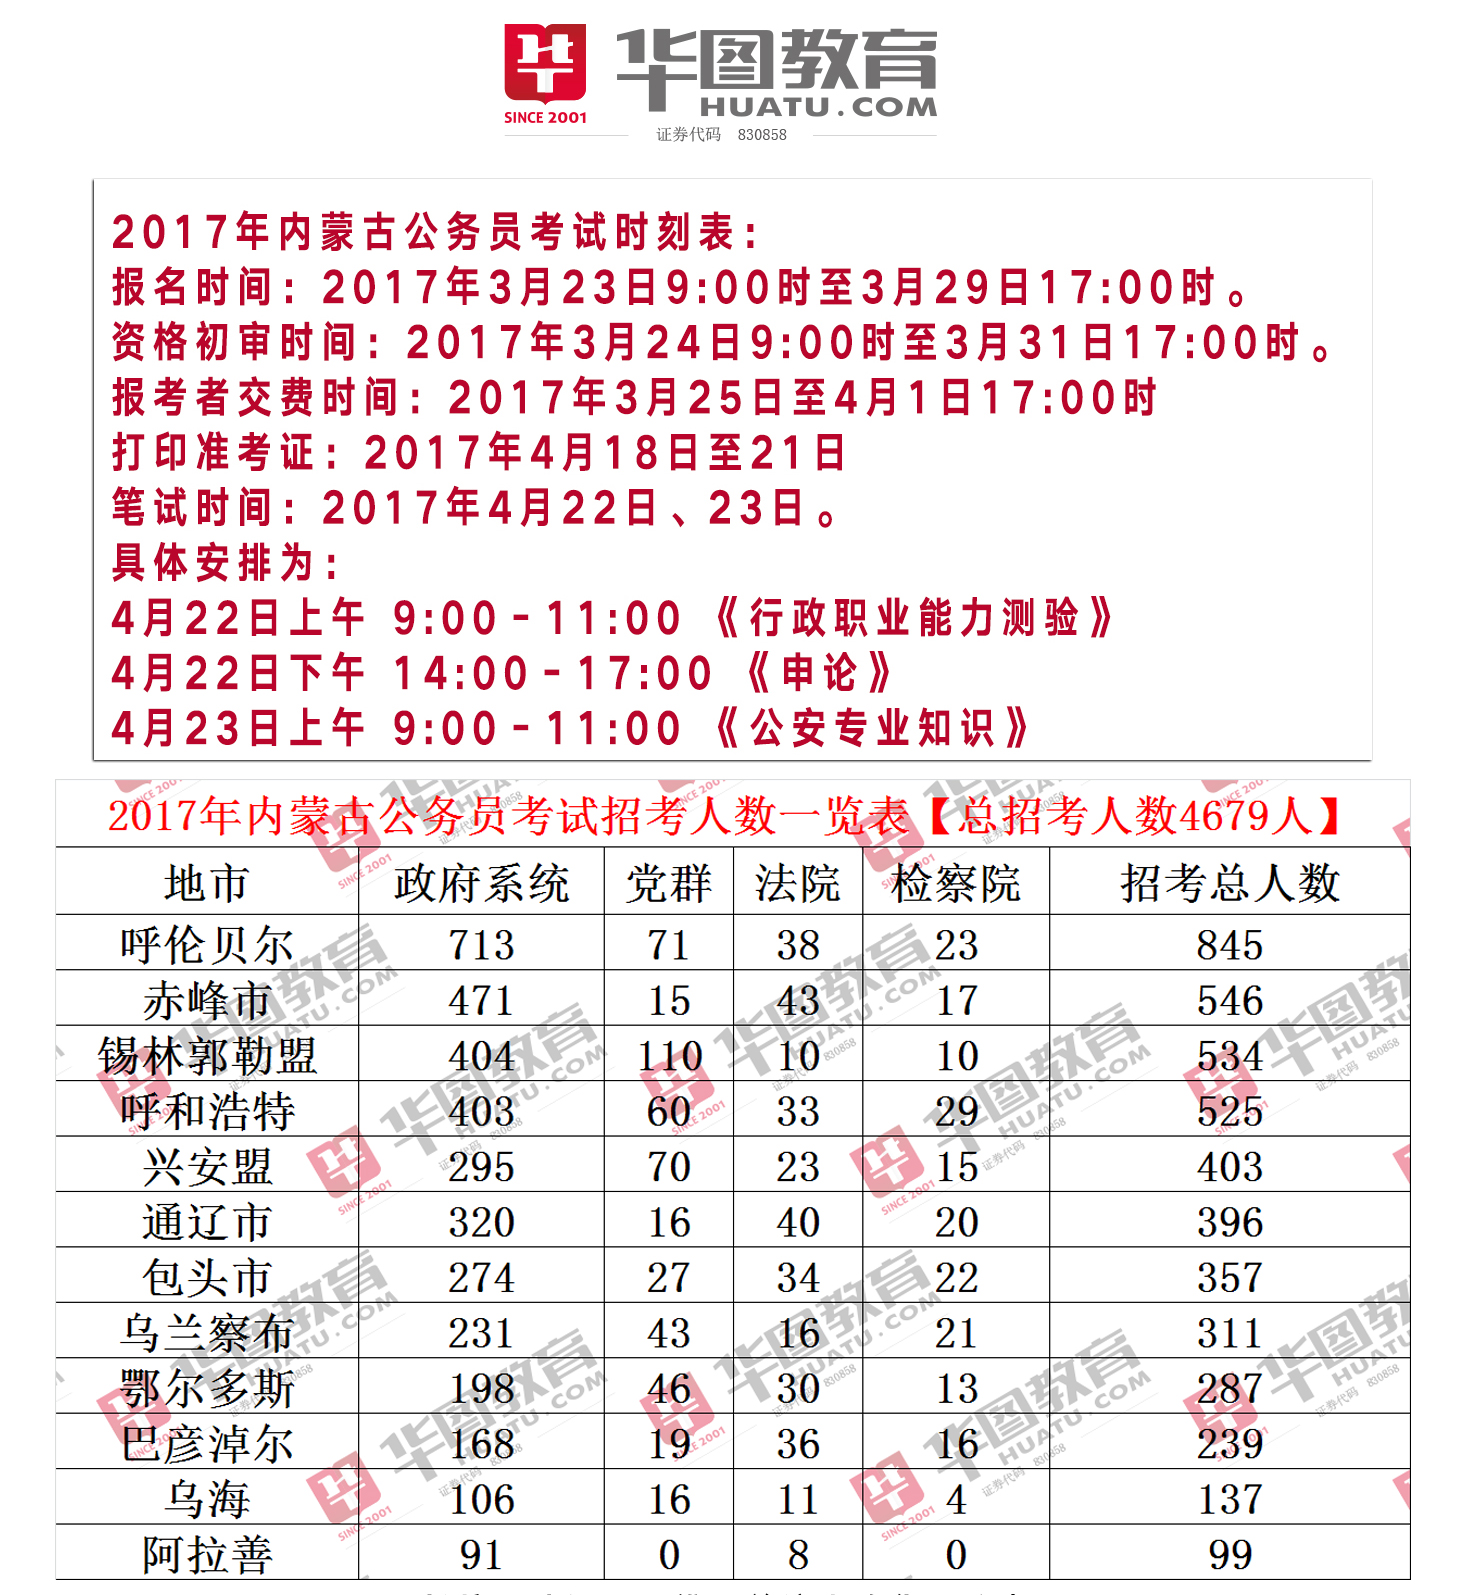 2017年内蒙古公务员考试呼伦贝尔职位表(完整